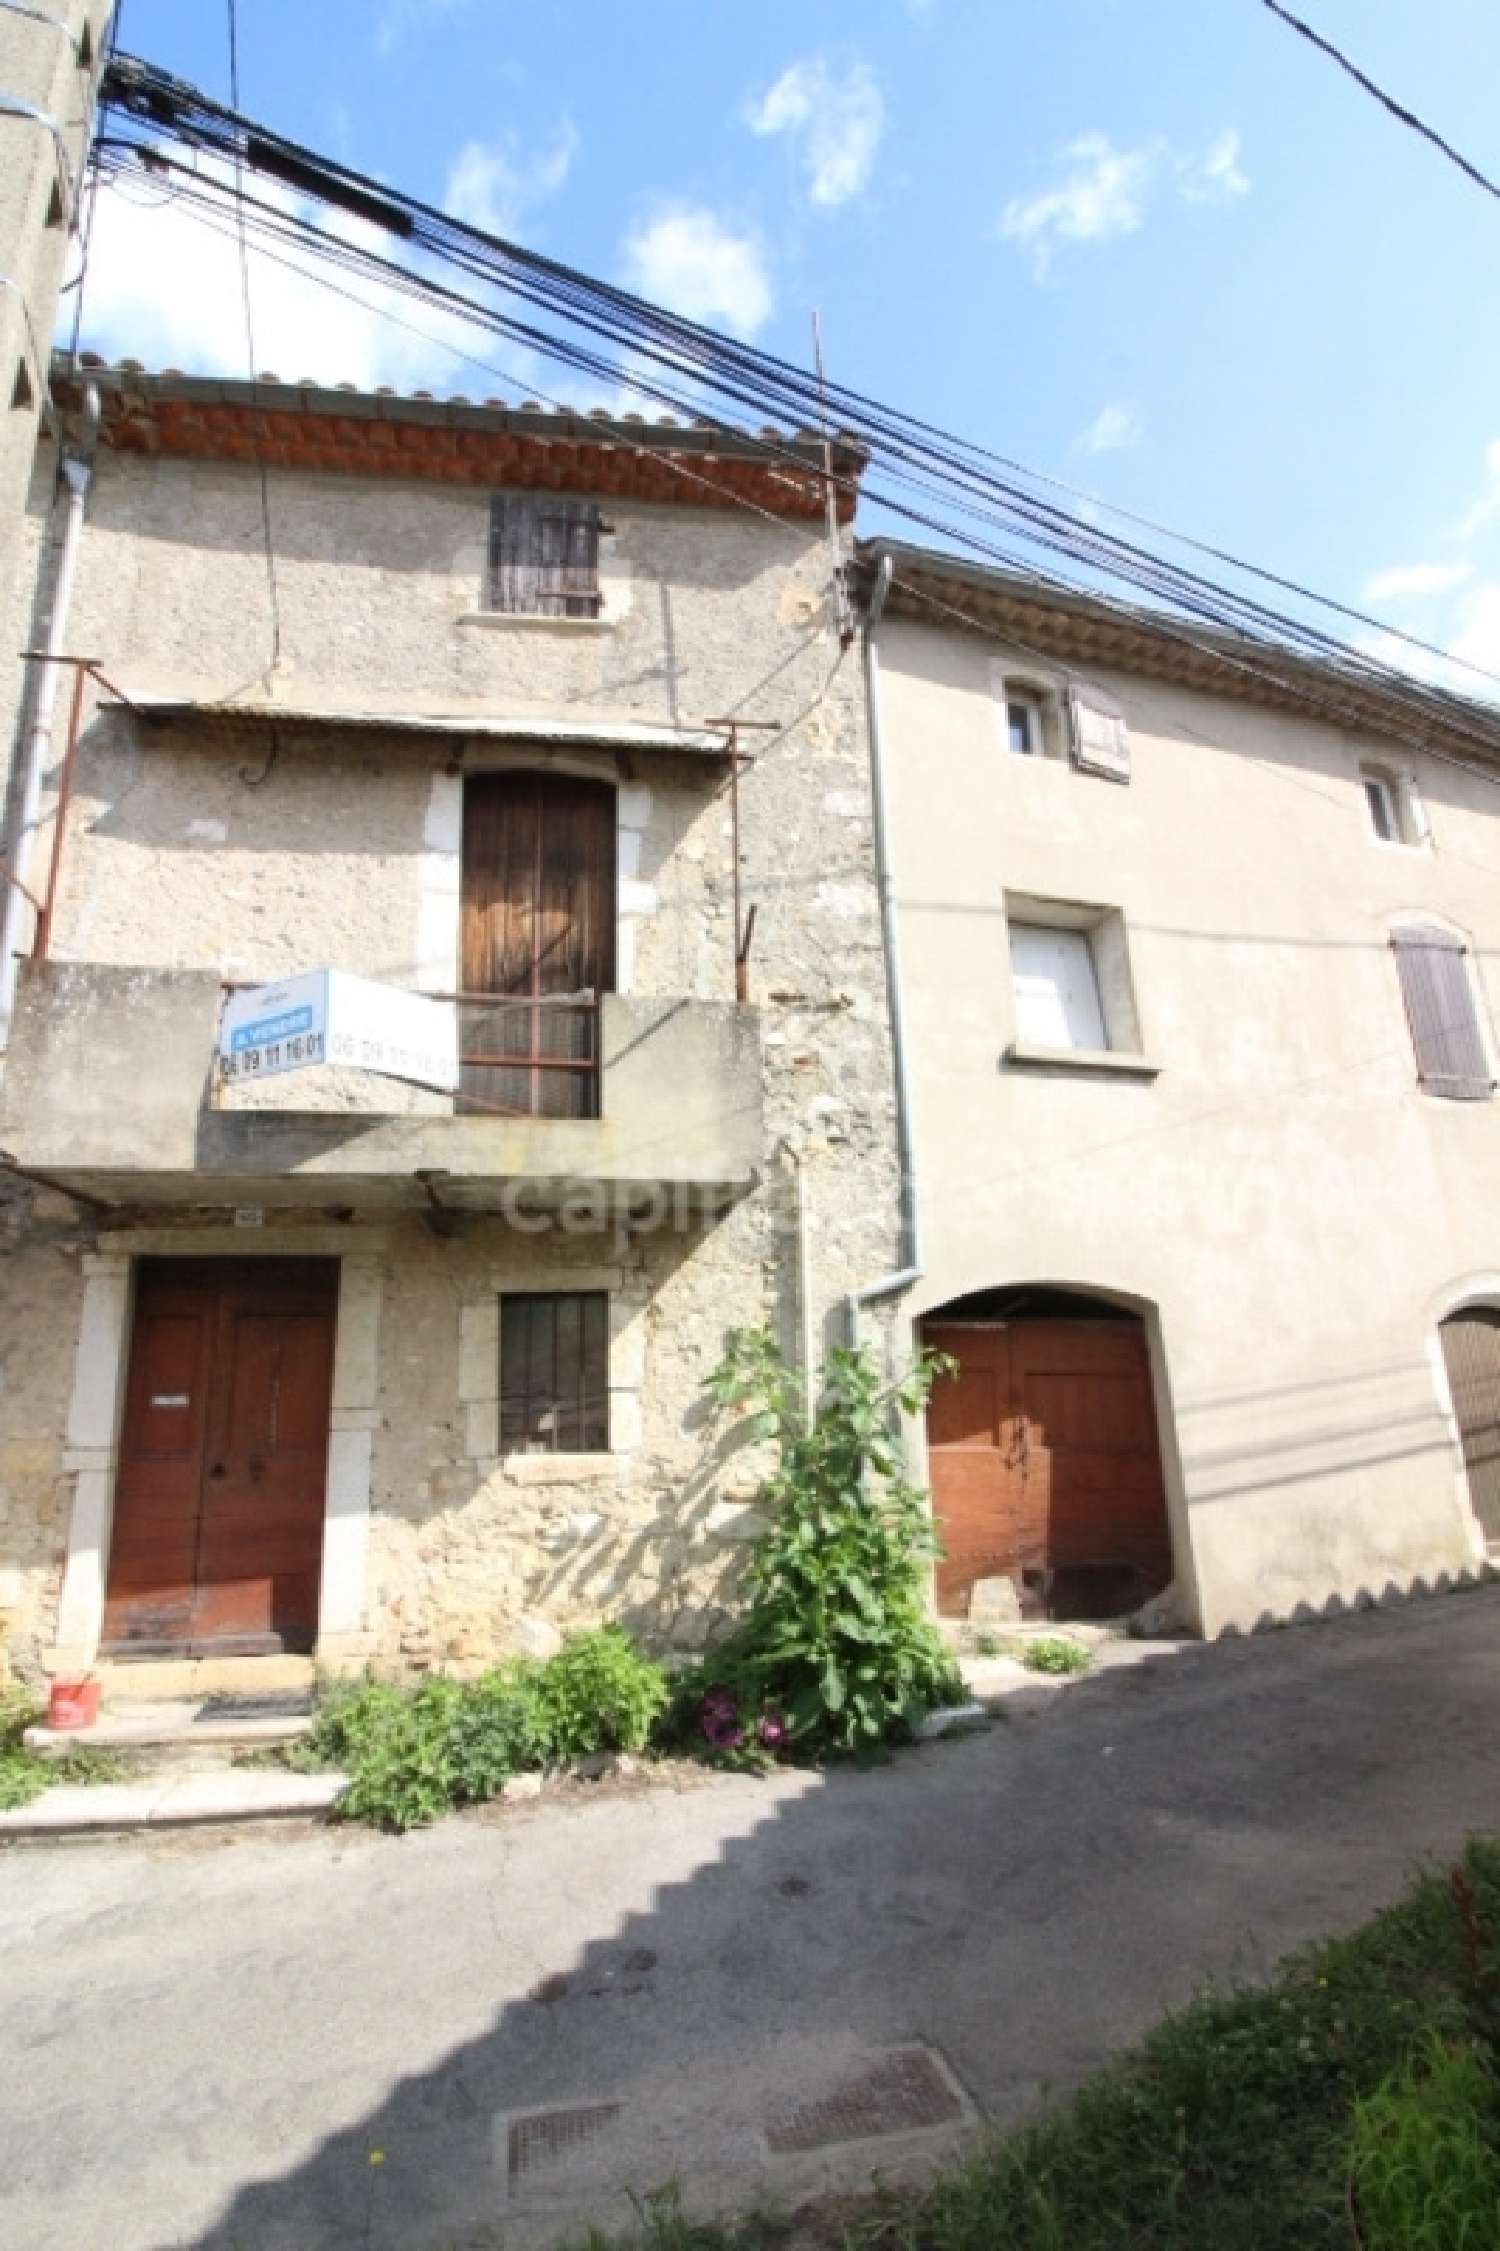  for sale village house Saint-Bauzille-de-Putois Hérault 1